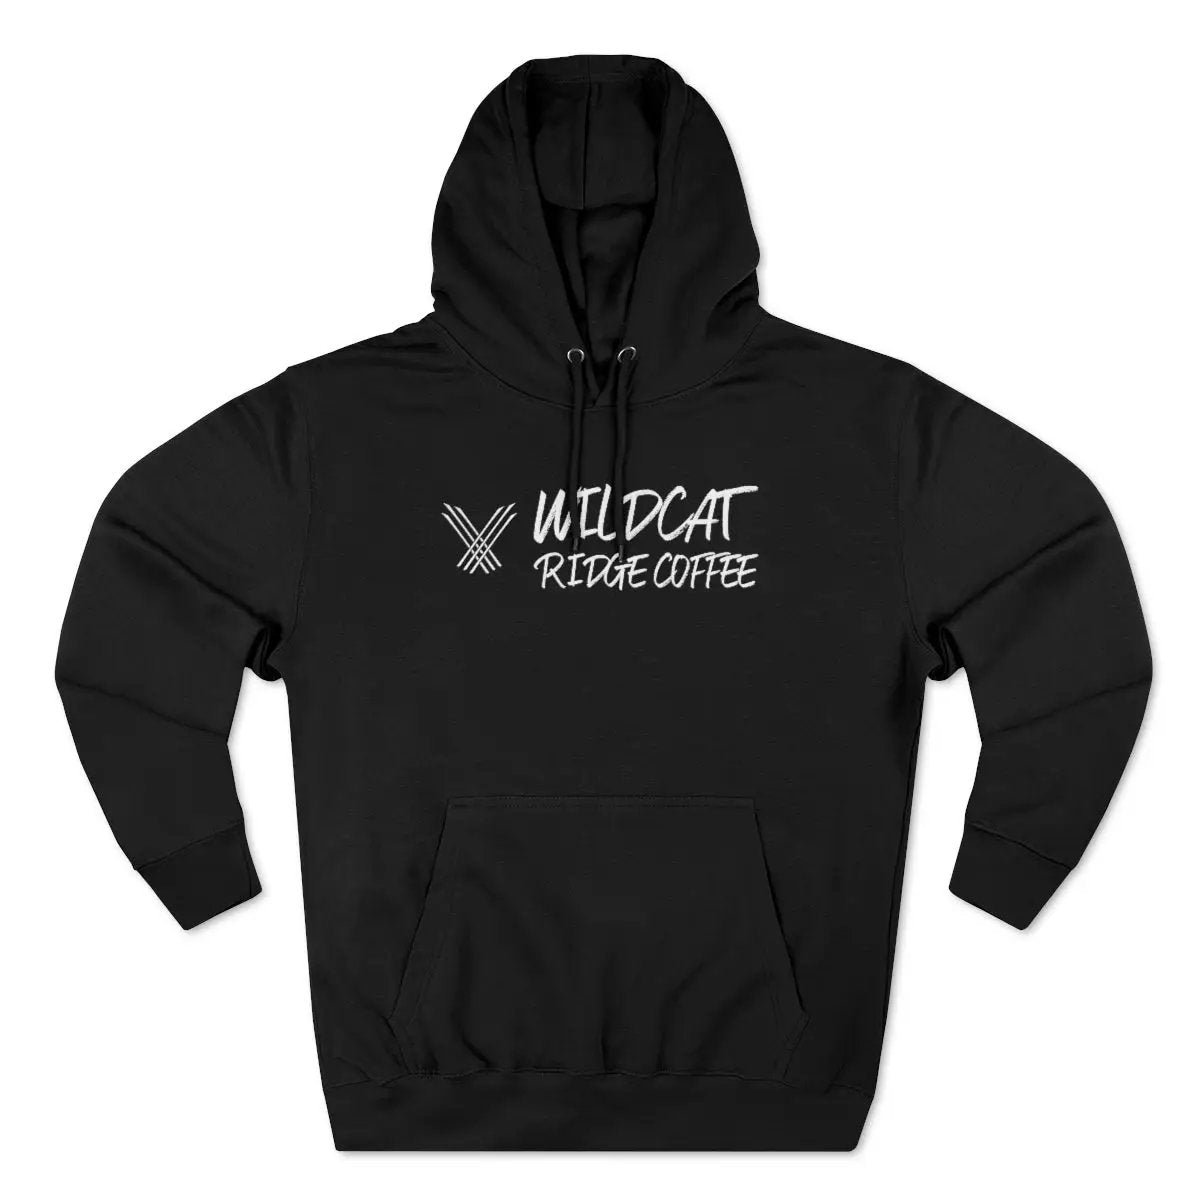 Unisex Premium Pullover Hoodie - Wildcat Ridge Coffee